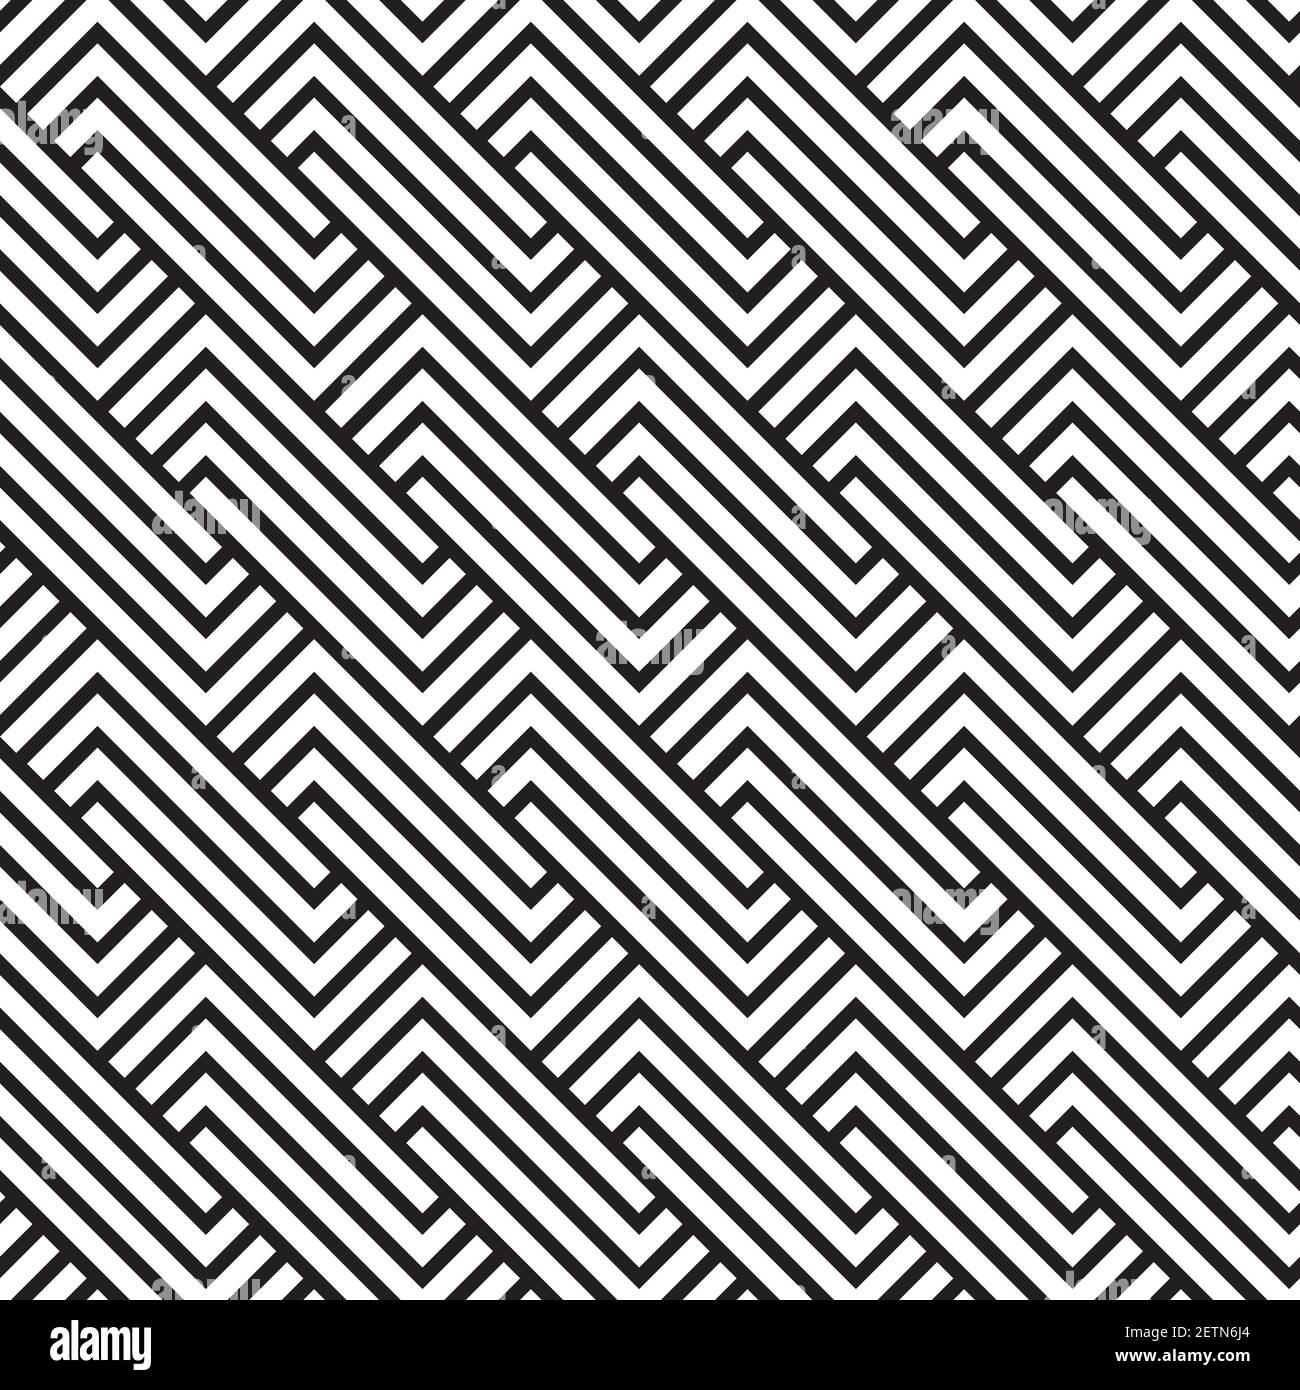 Un motivo retro senza cuciture con motivi geometrici in bianco e nero  Immagine e Vettoriale - Alamy